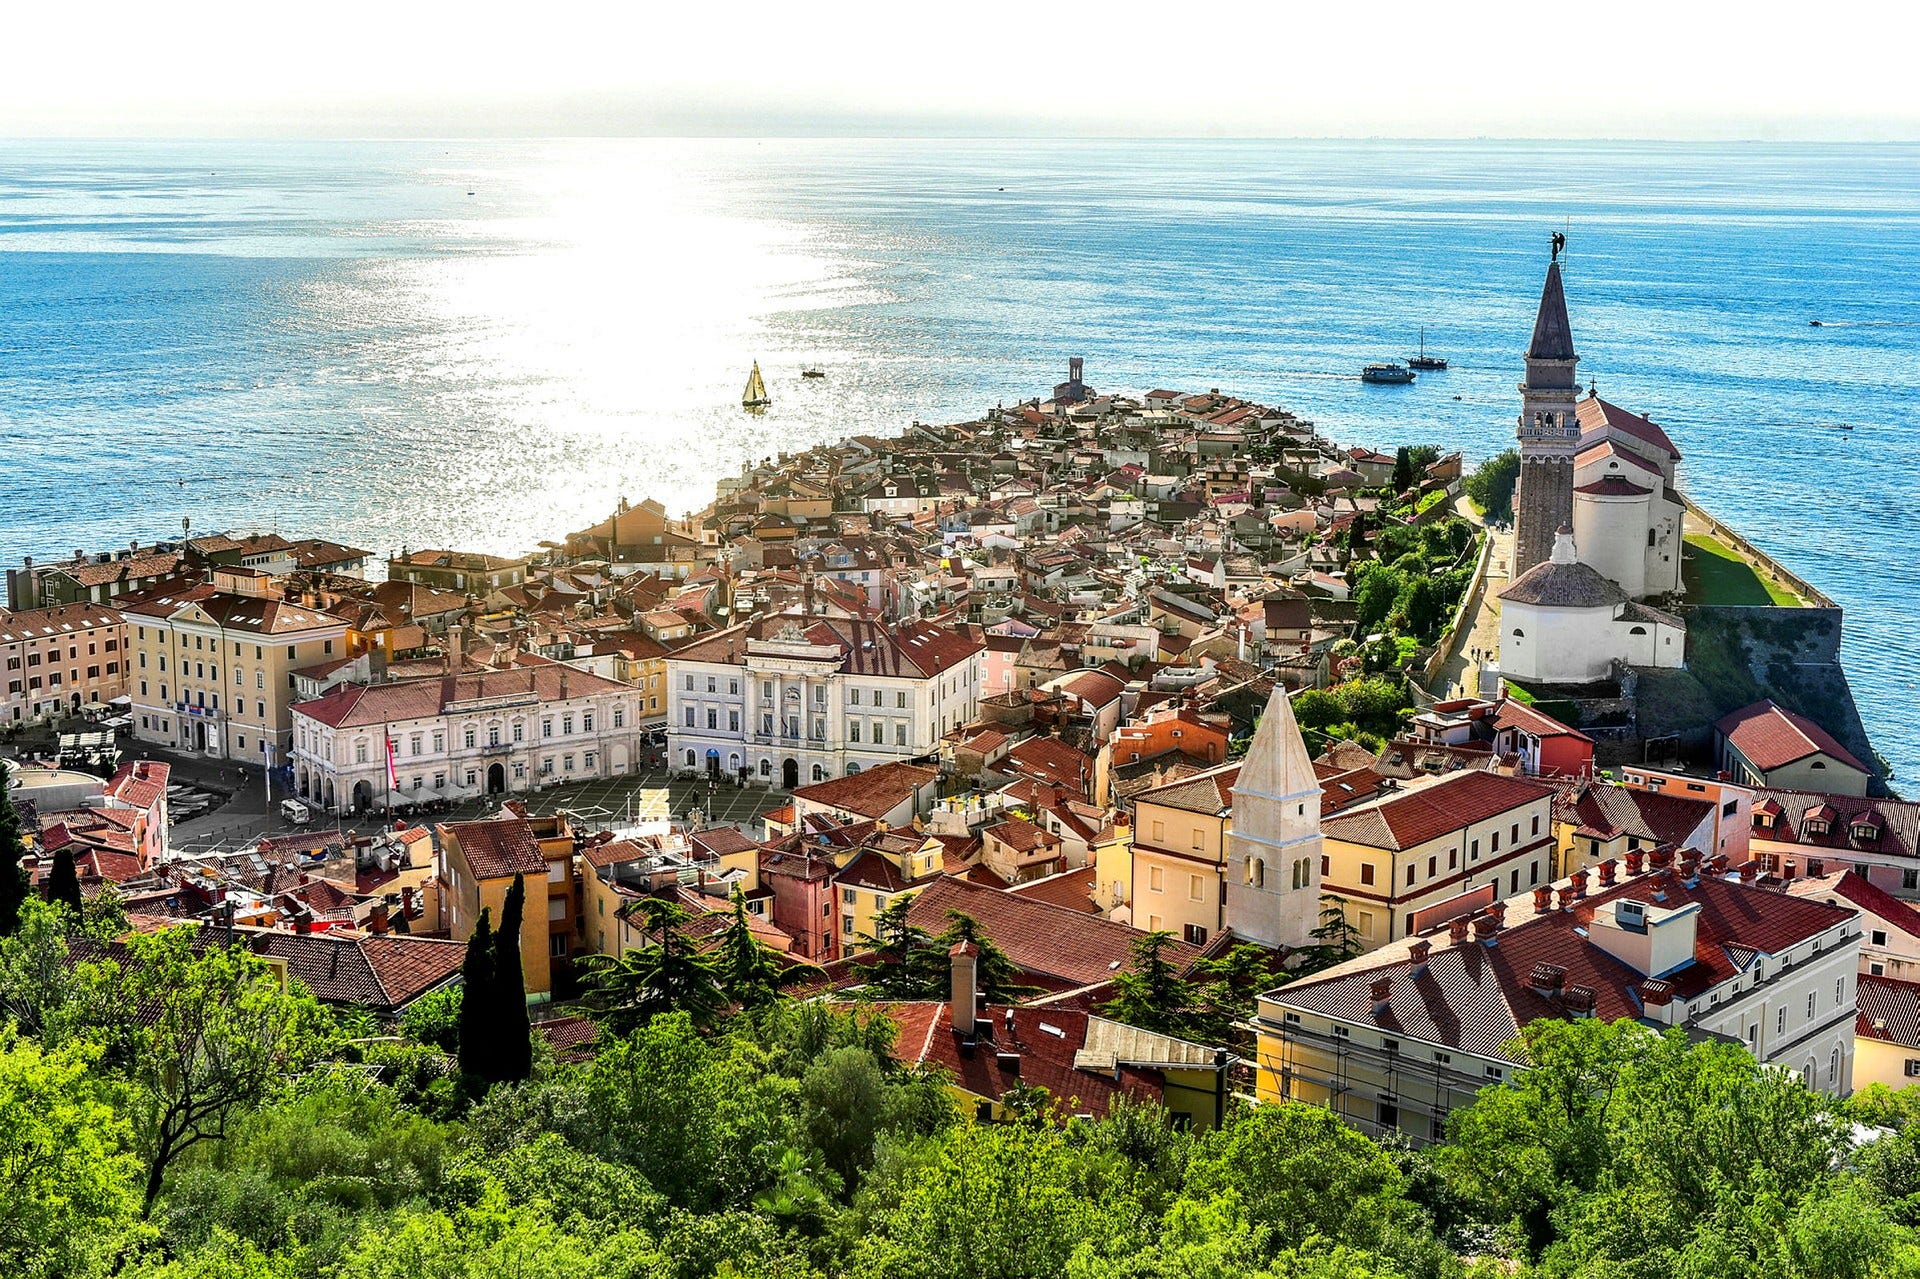 Staden Piran, en historisk pärla full med renässansarkitektur på en udde i Adriatiska havet.